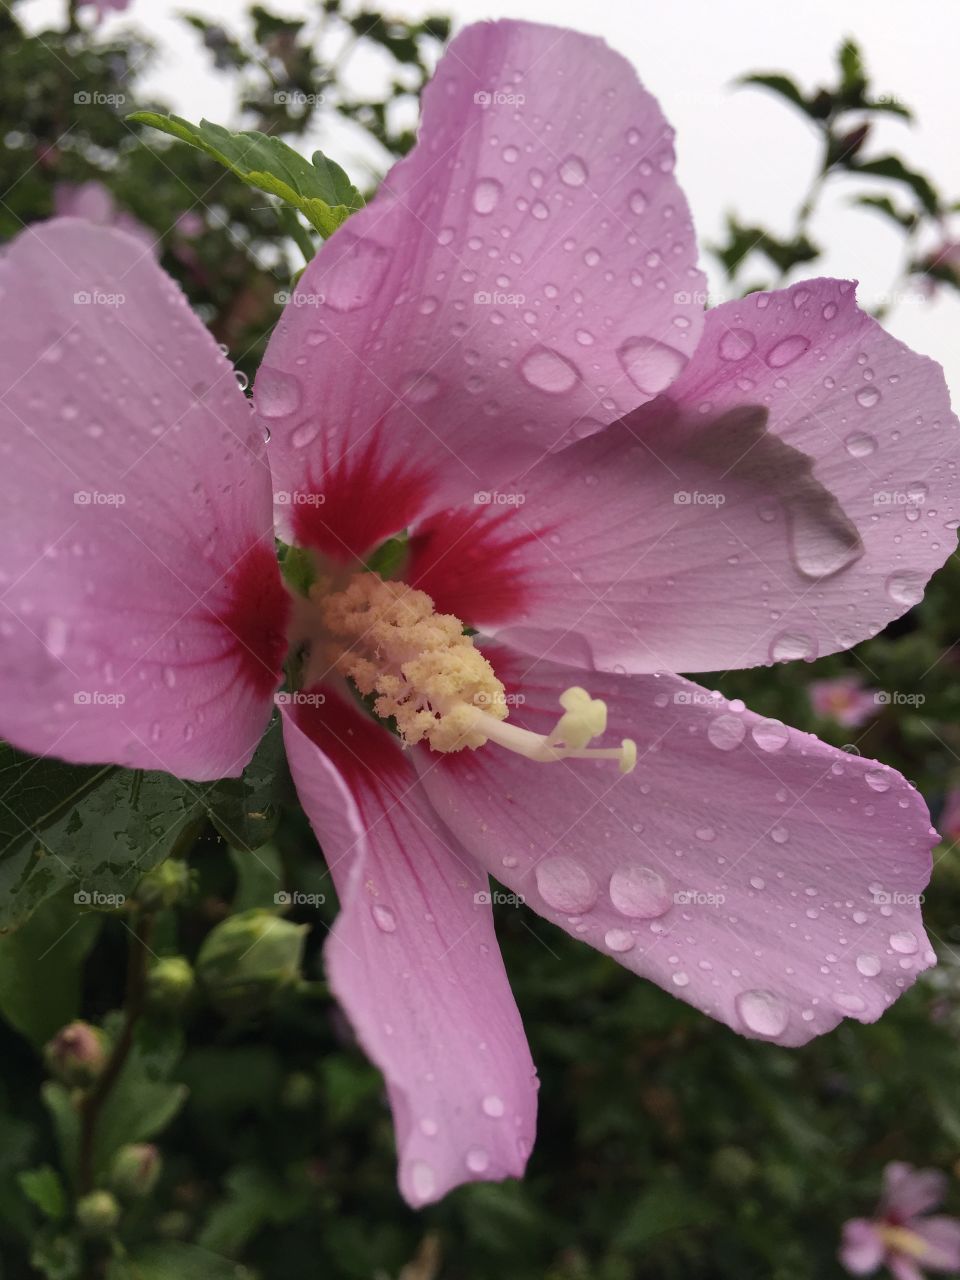 Raindrops on petals 